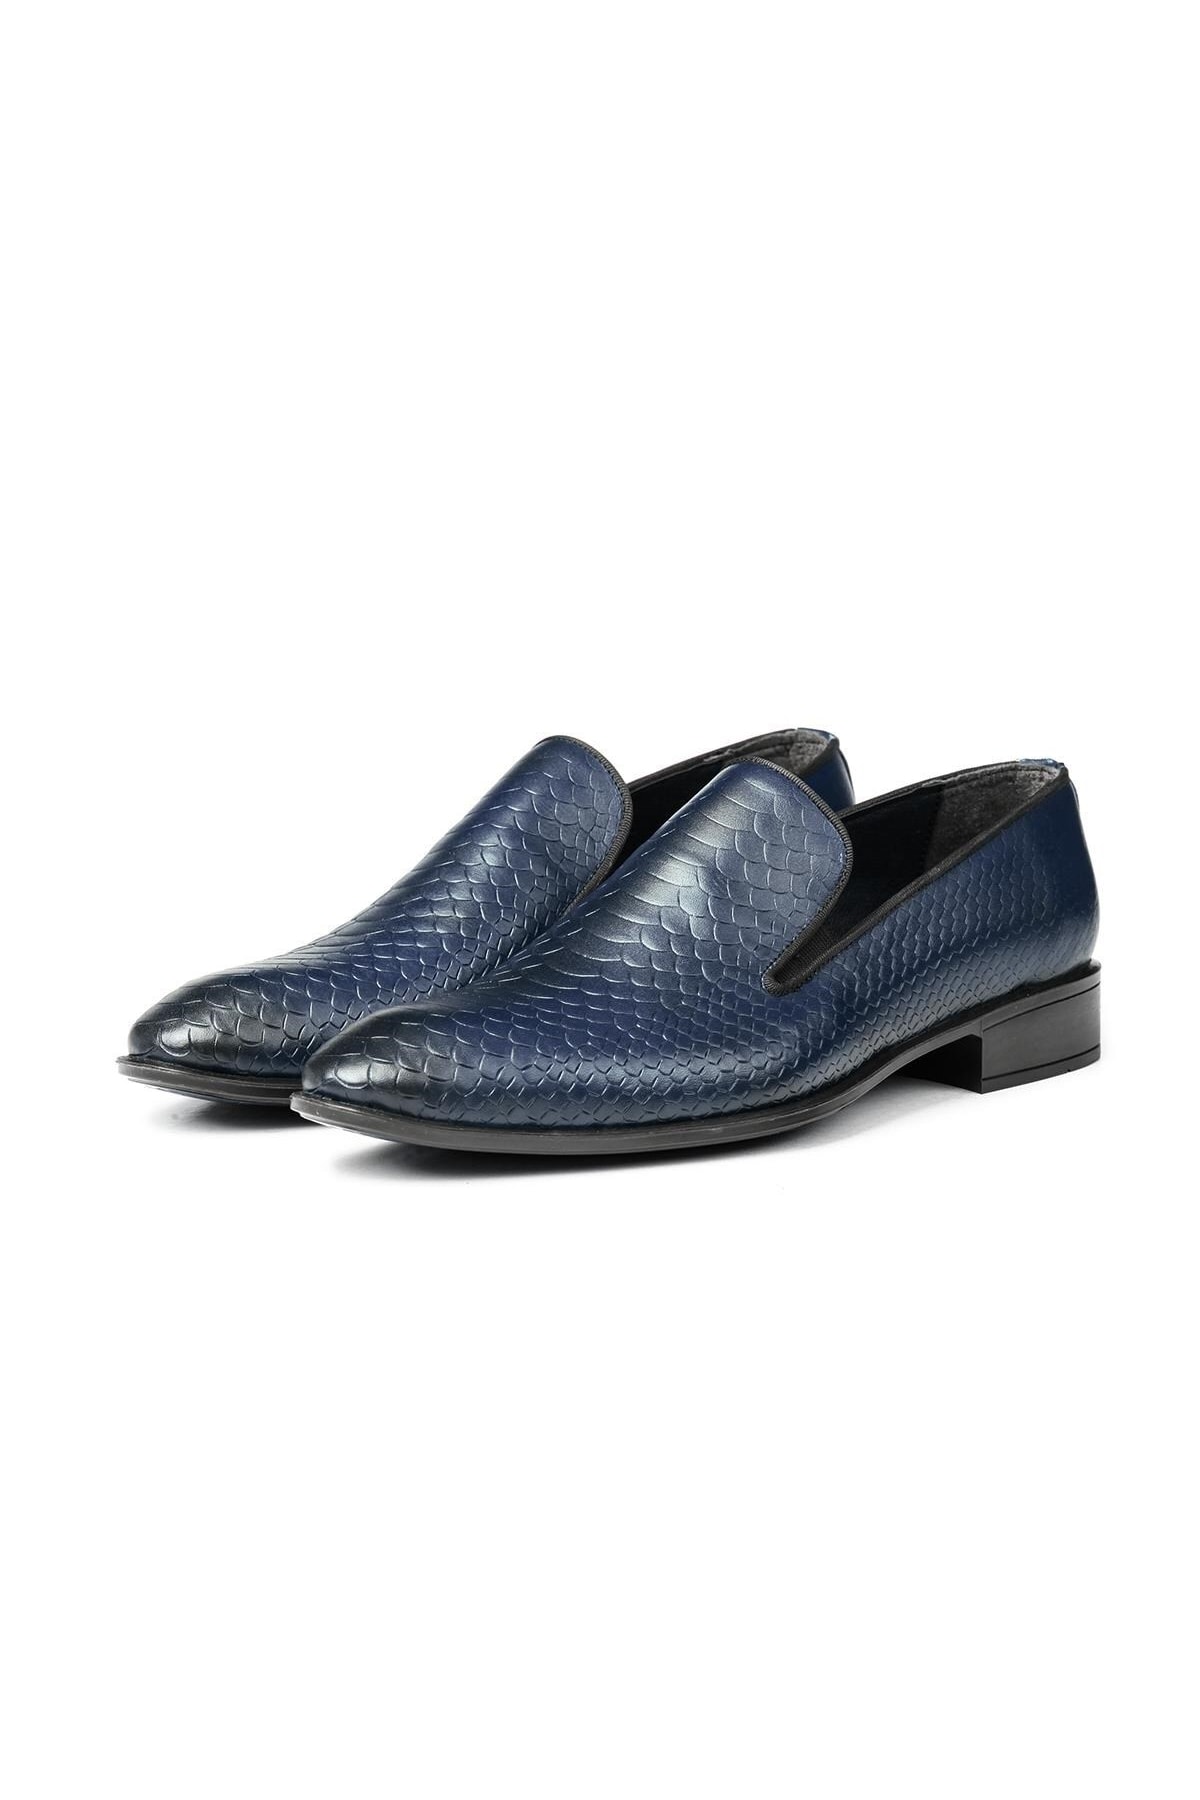 Levně Ducavelli Alligator Genuine Leather Men's Classic Shoes, Loafers Classic Shoes, Loafers.